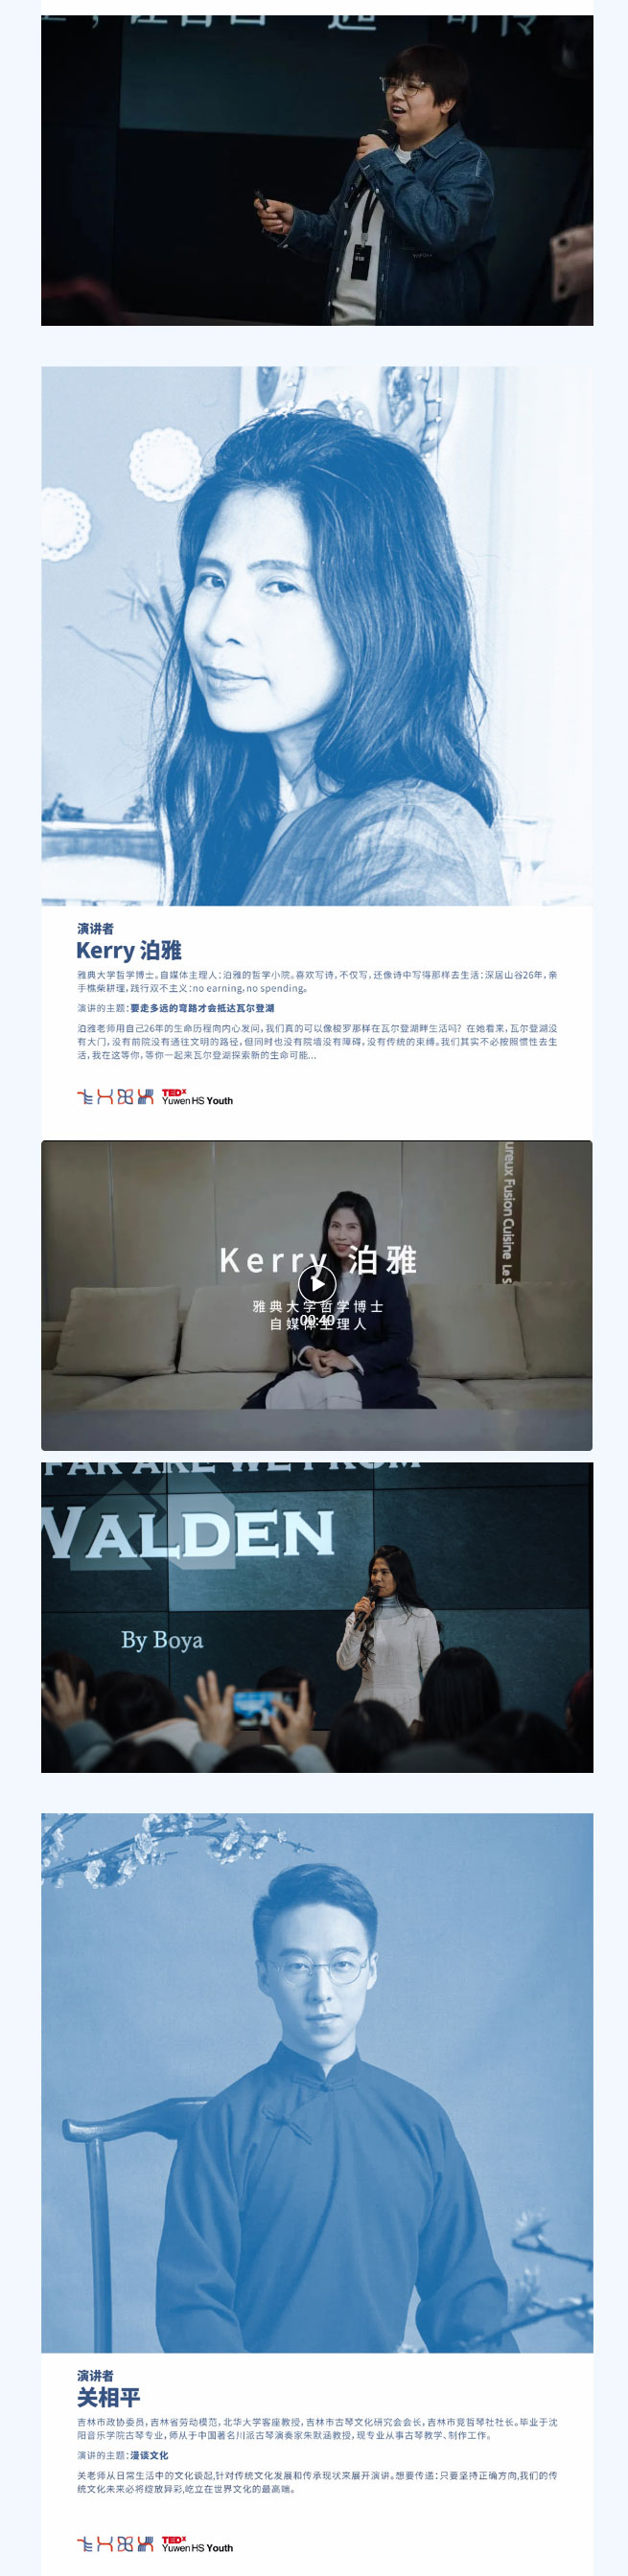 【毓见】TEDx演讲会-_-TEDx-Yuwen-HS-Youth_04.jpg